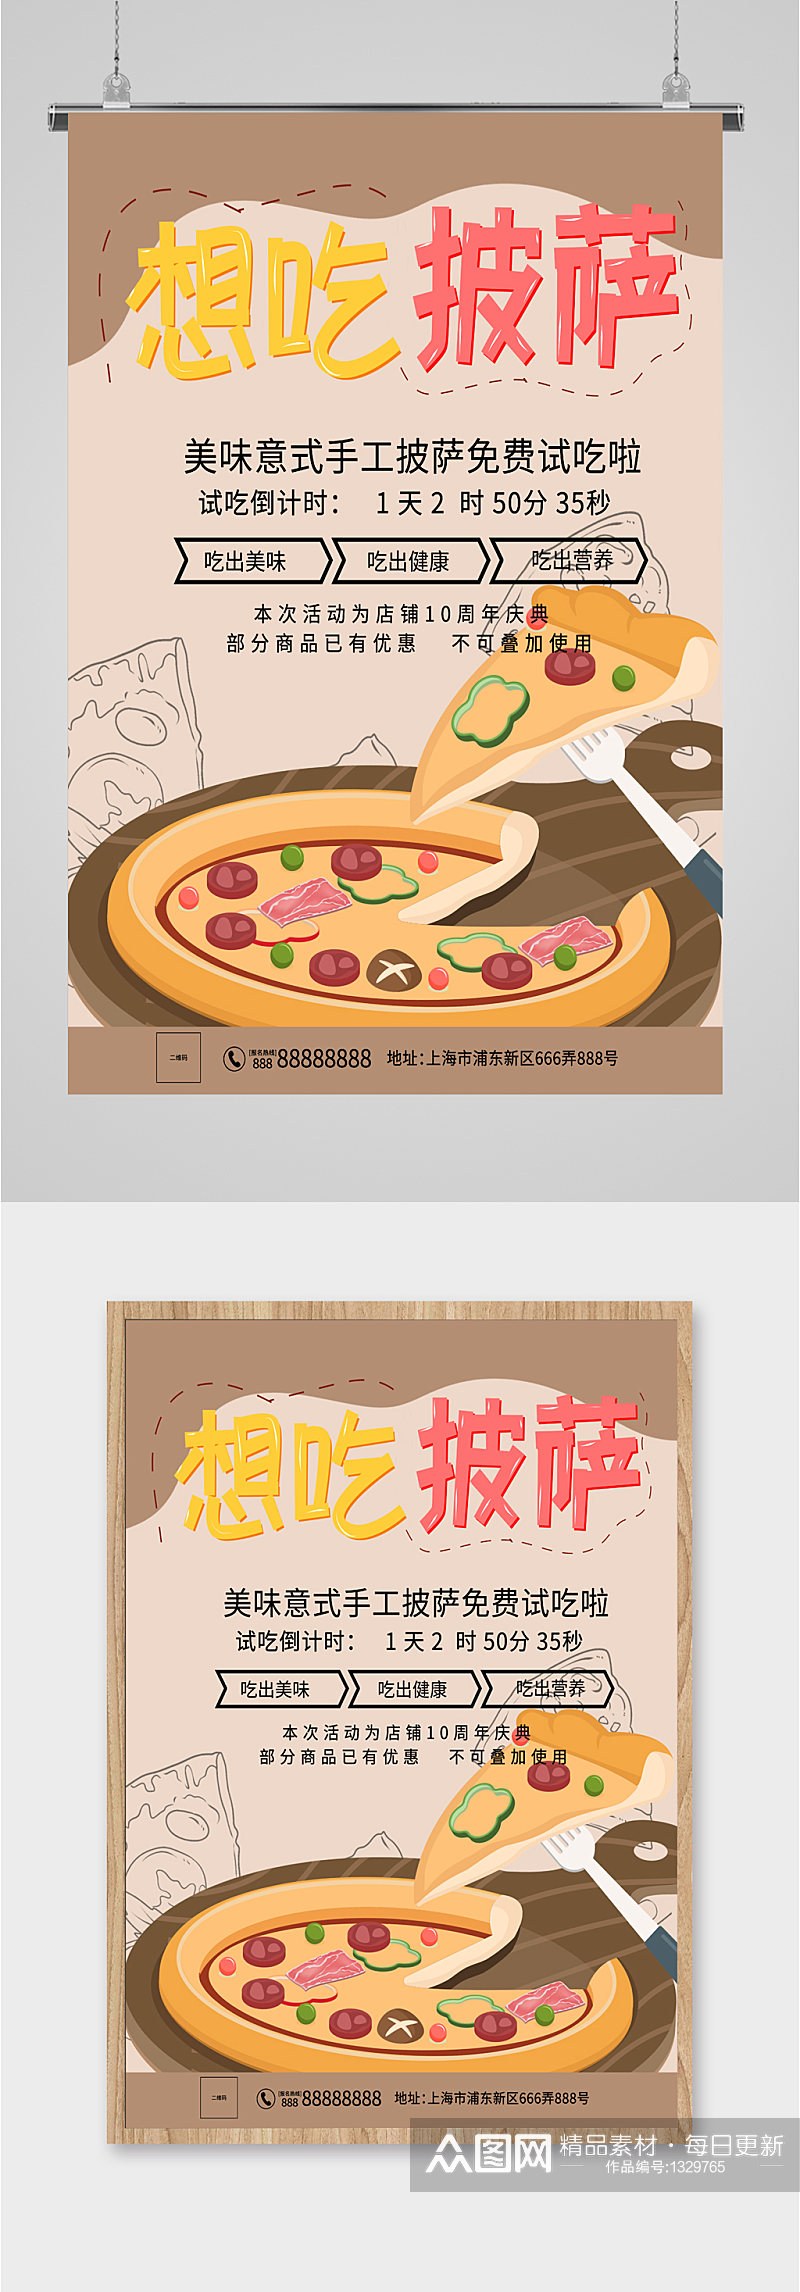 披萨西餐美食海报素材